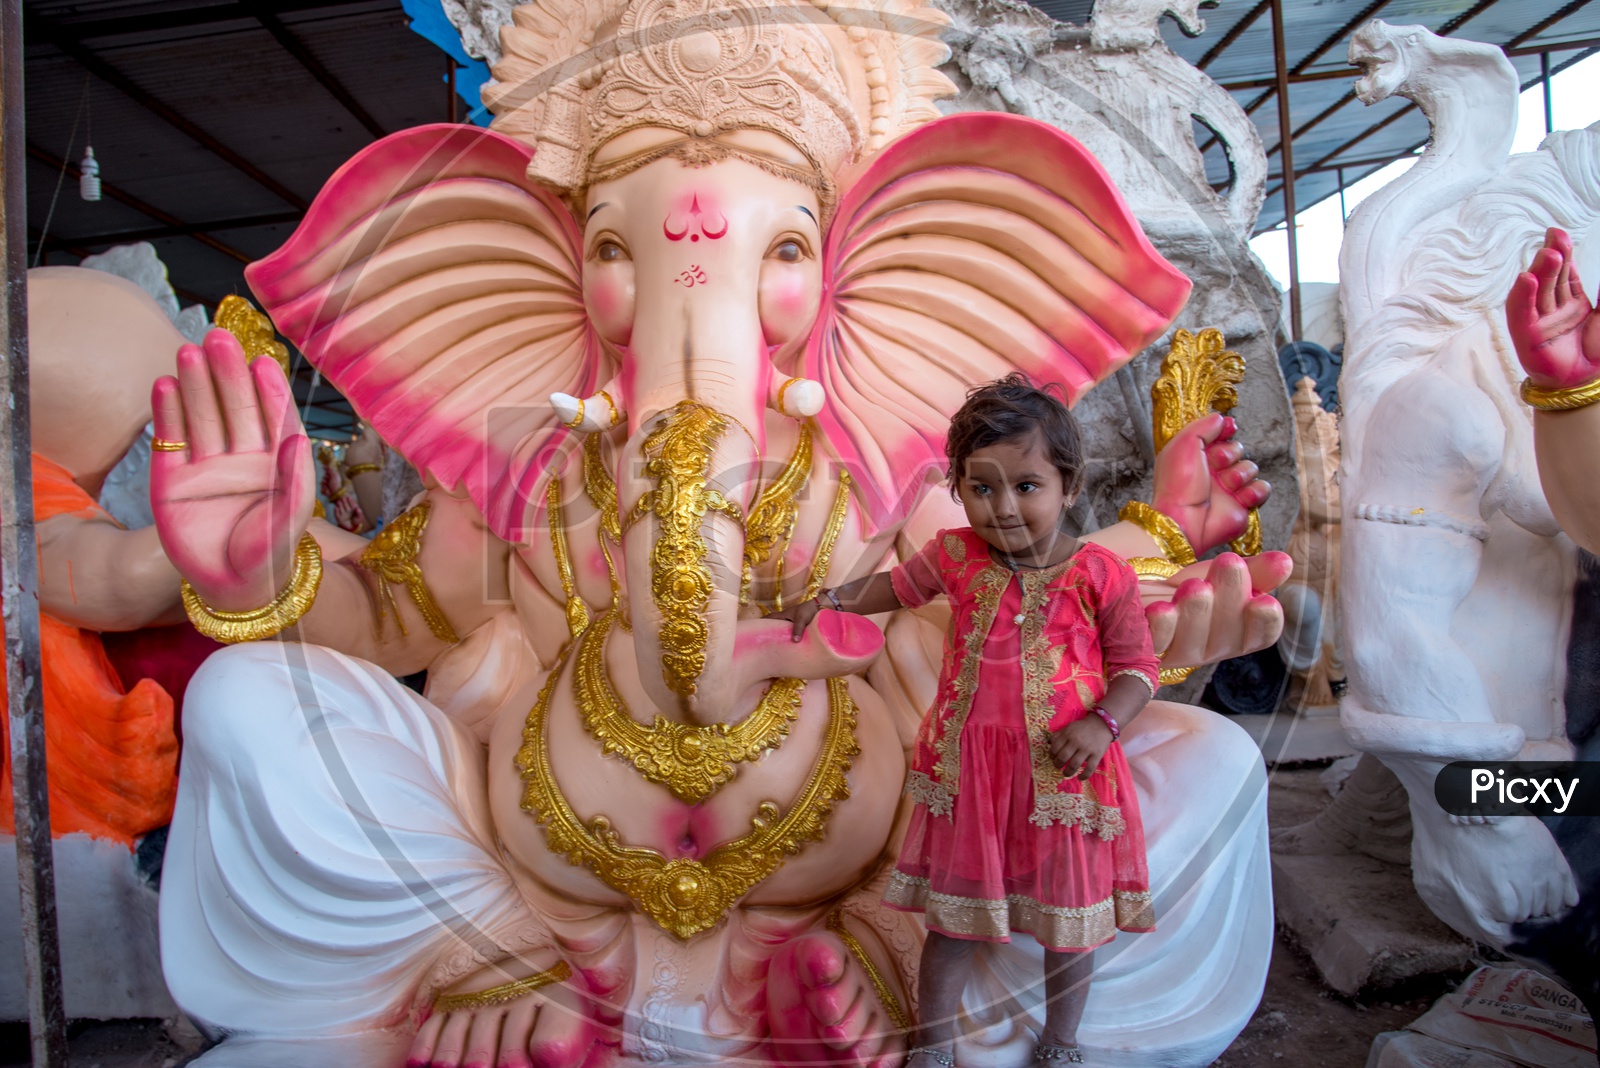 A Small Girl at Lord Ganesh Idols In Workshops For Ganesh Festival  or Ganesh Chathurdhi